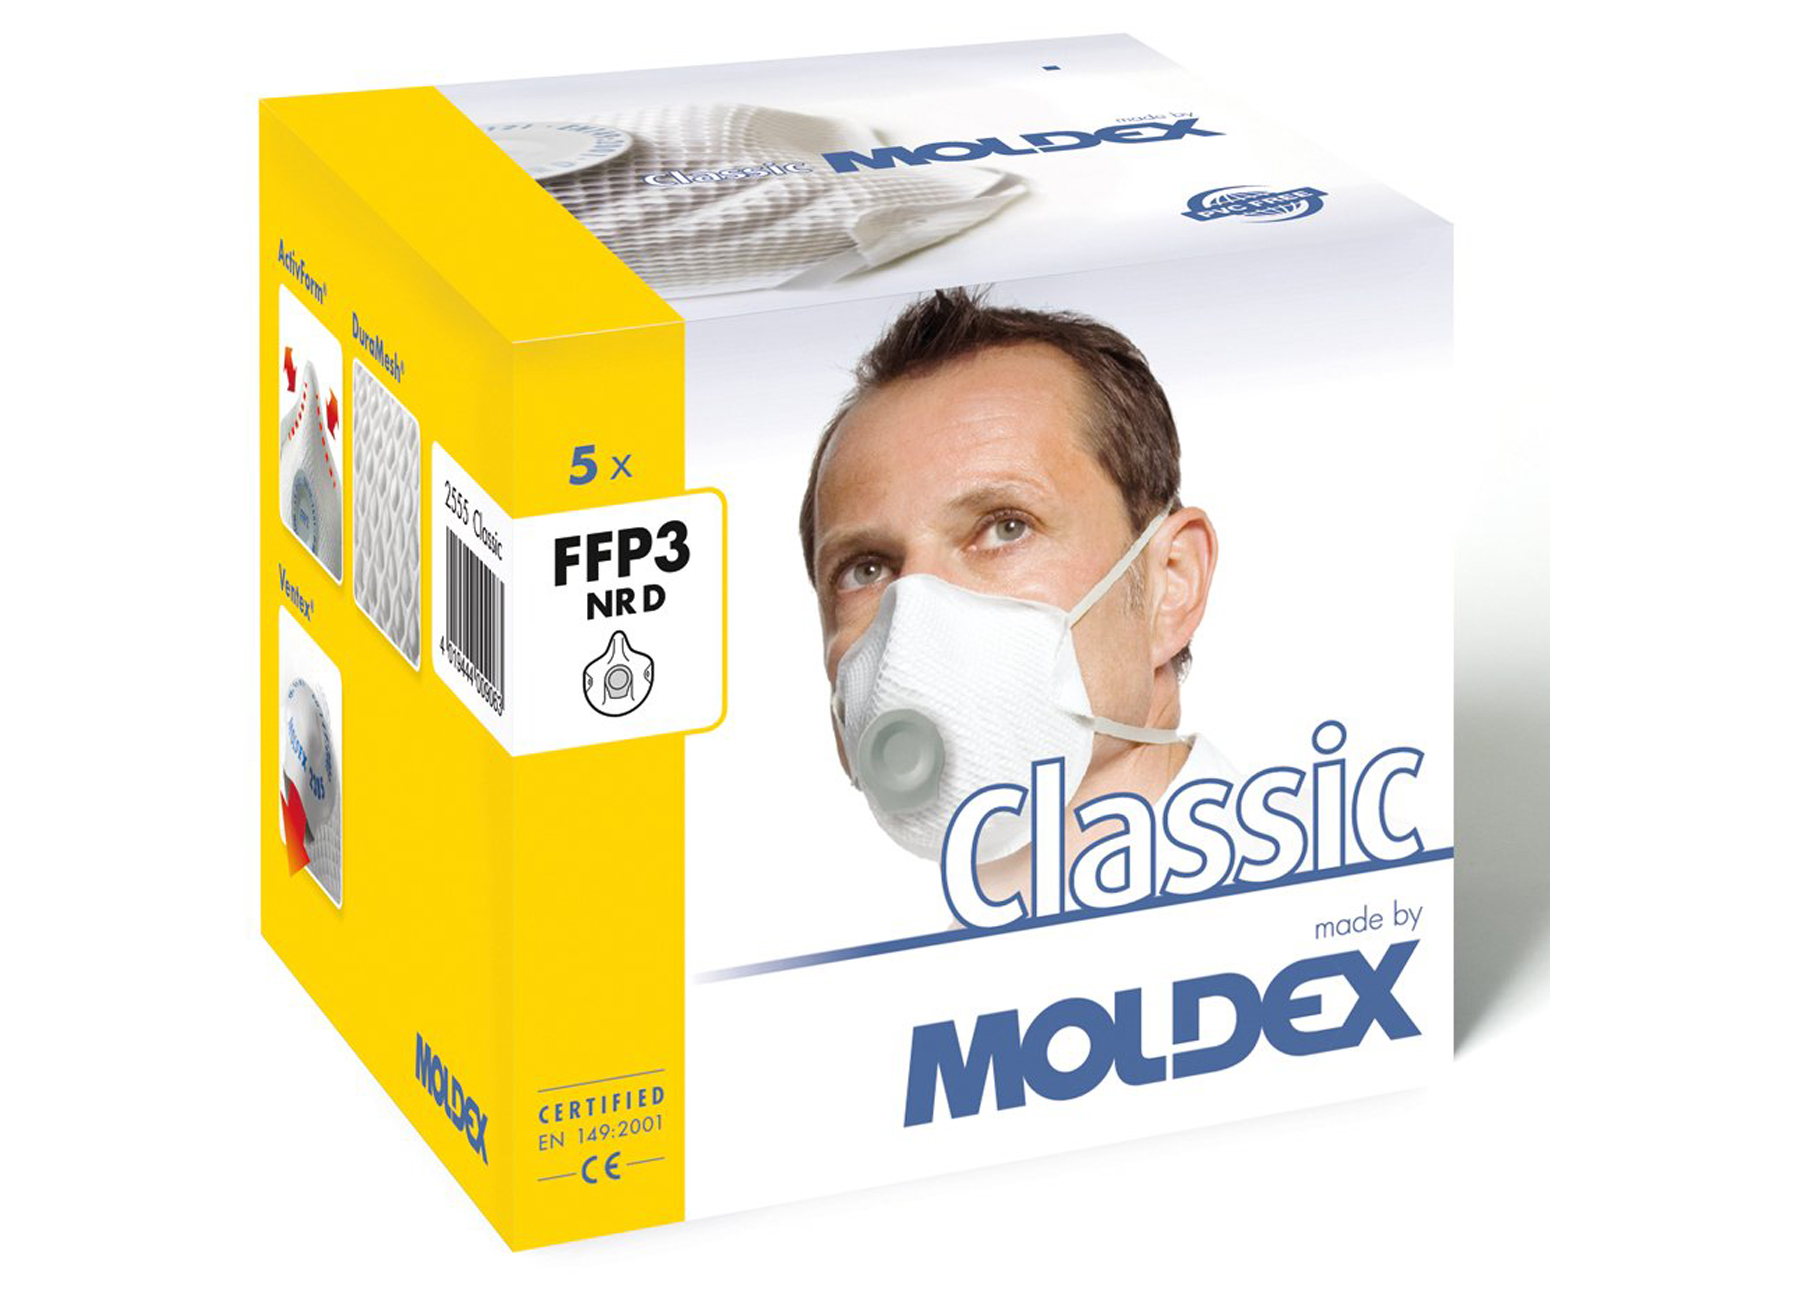 MOLDEX MASQUE CLASSIQUE FFP3 NR D 2555-55 (5 PCS)